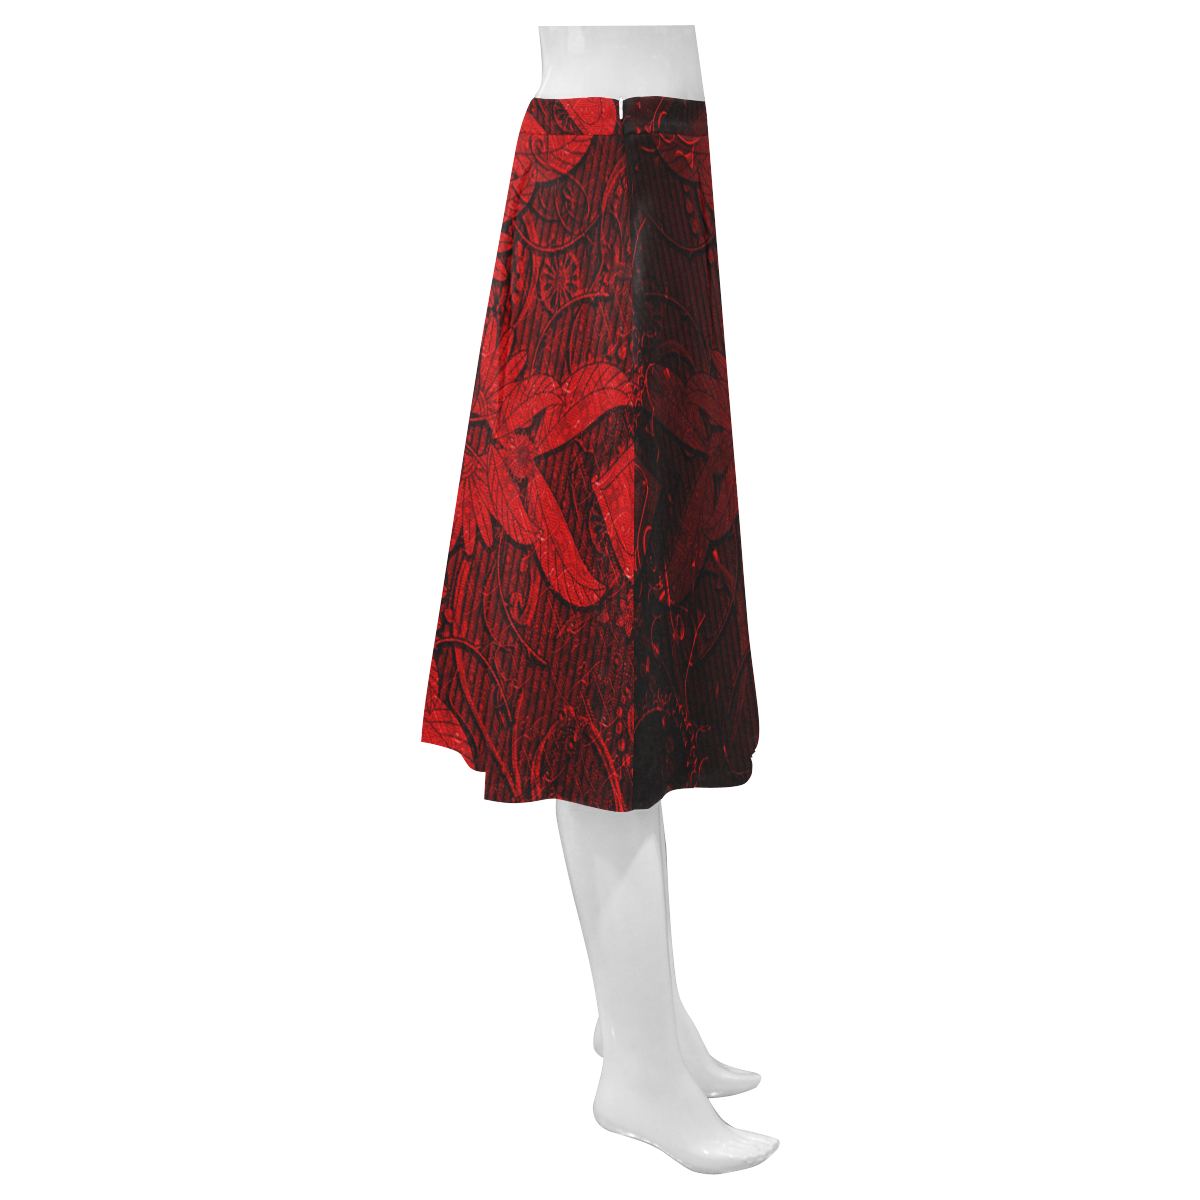 Heart on vintage background Mnemosyne Women's Crepe Skirt (Model D16)